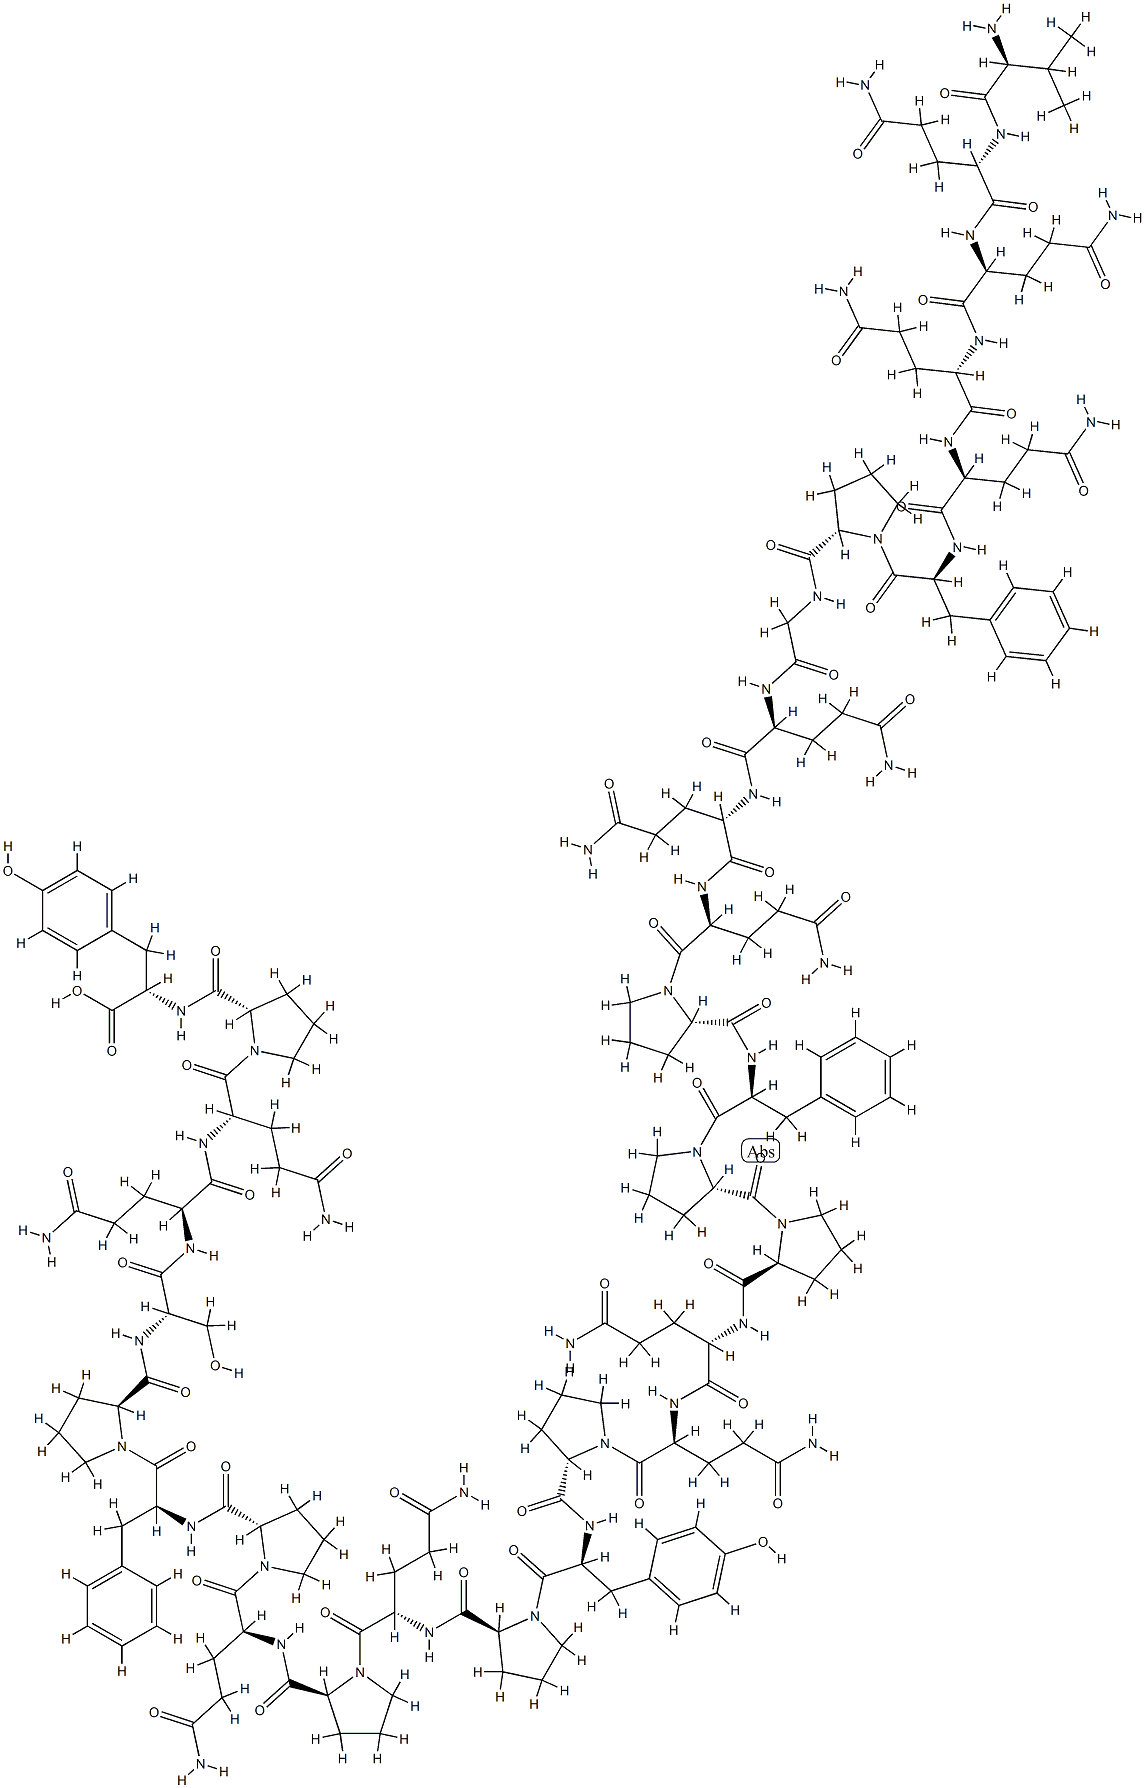 gliadin peptide CT-2